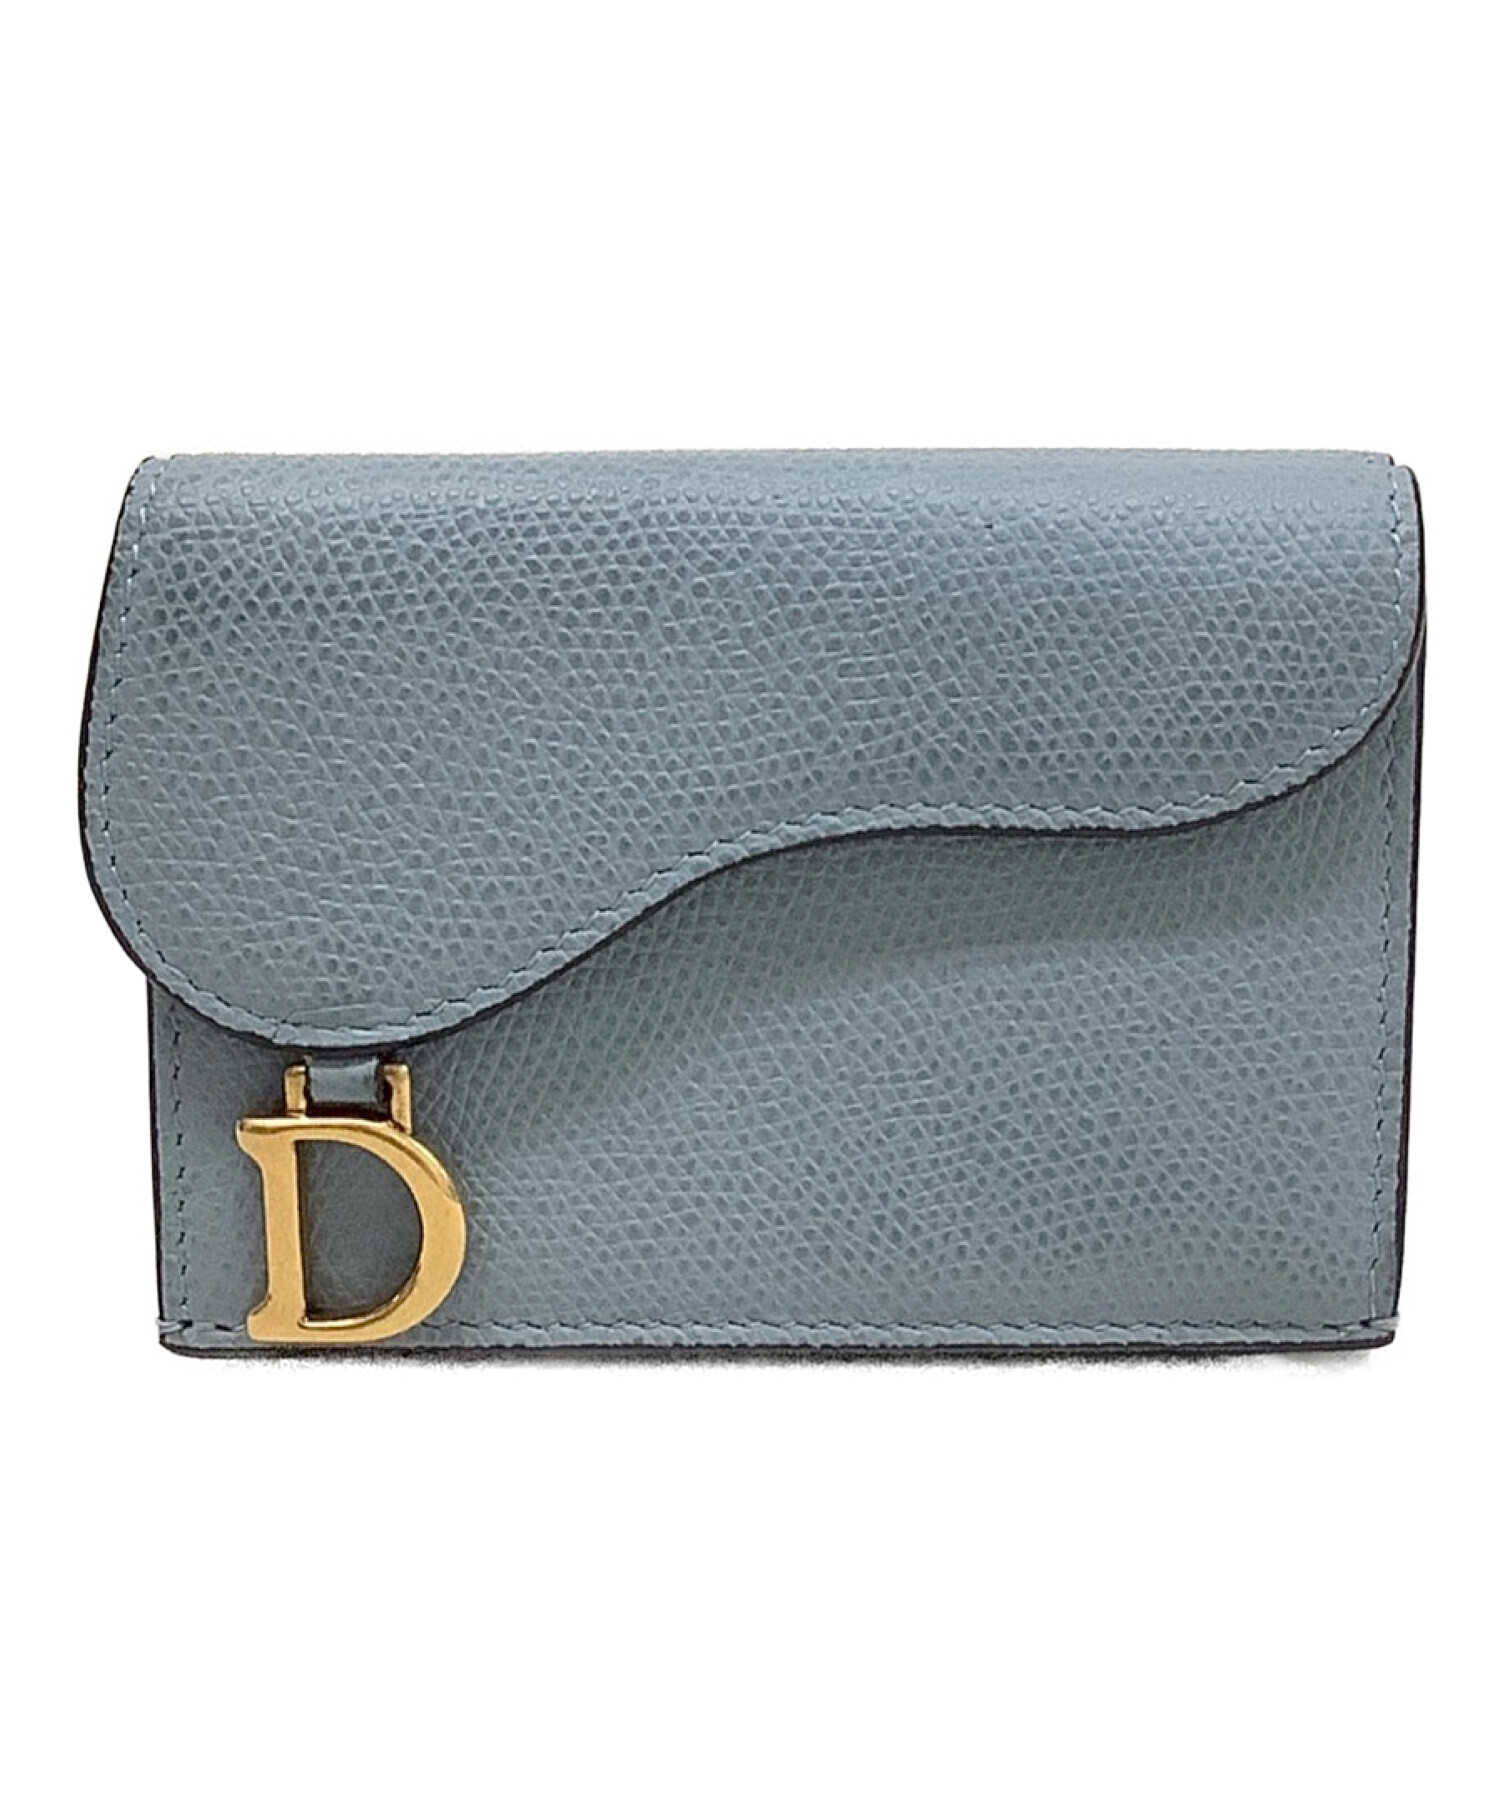 ChristianDior サドル コンパクトウォレット ブルー - 折り財布